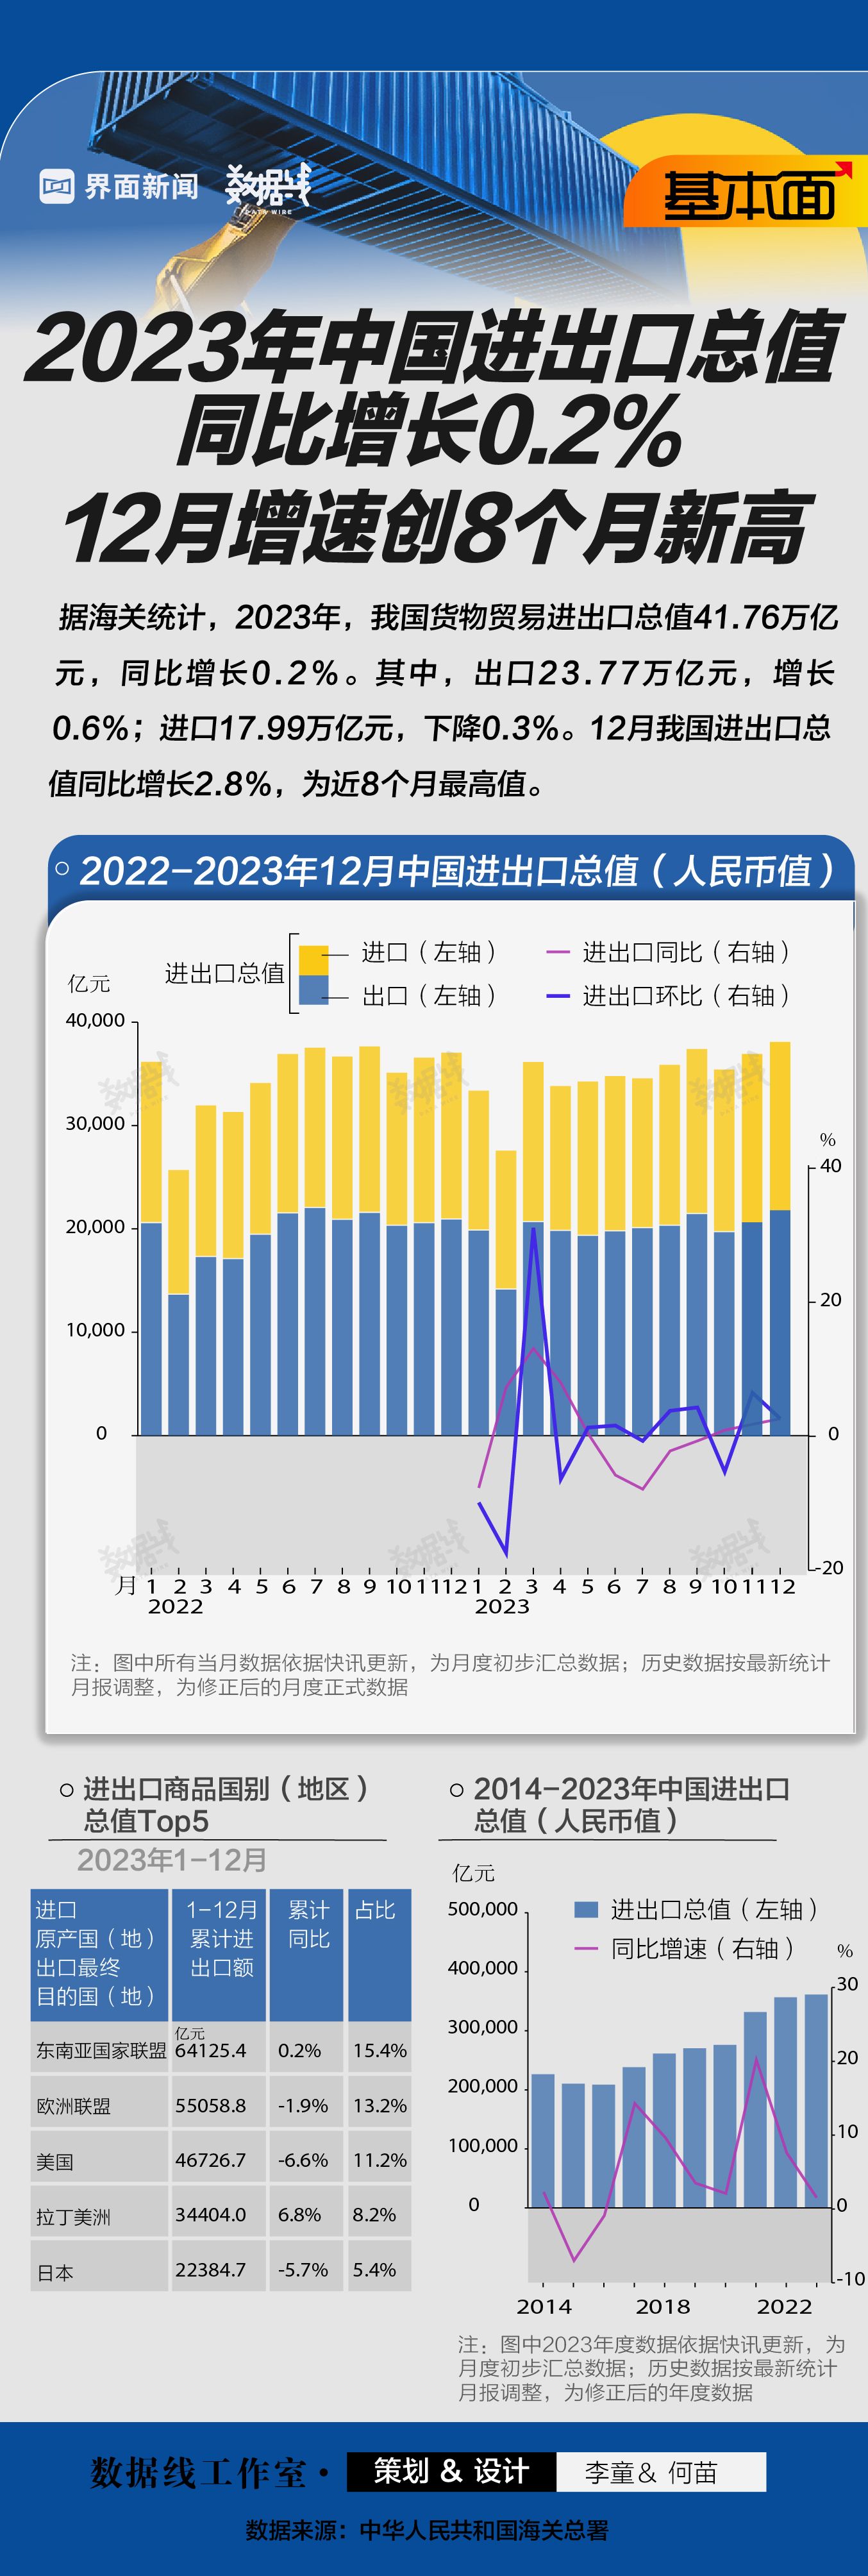 哔哩哔哩:吃瓜图片表情包大全-基本面 | 2023年中国进出口总值同比增长0.2%，12月增速创8个月新高|界面新闻